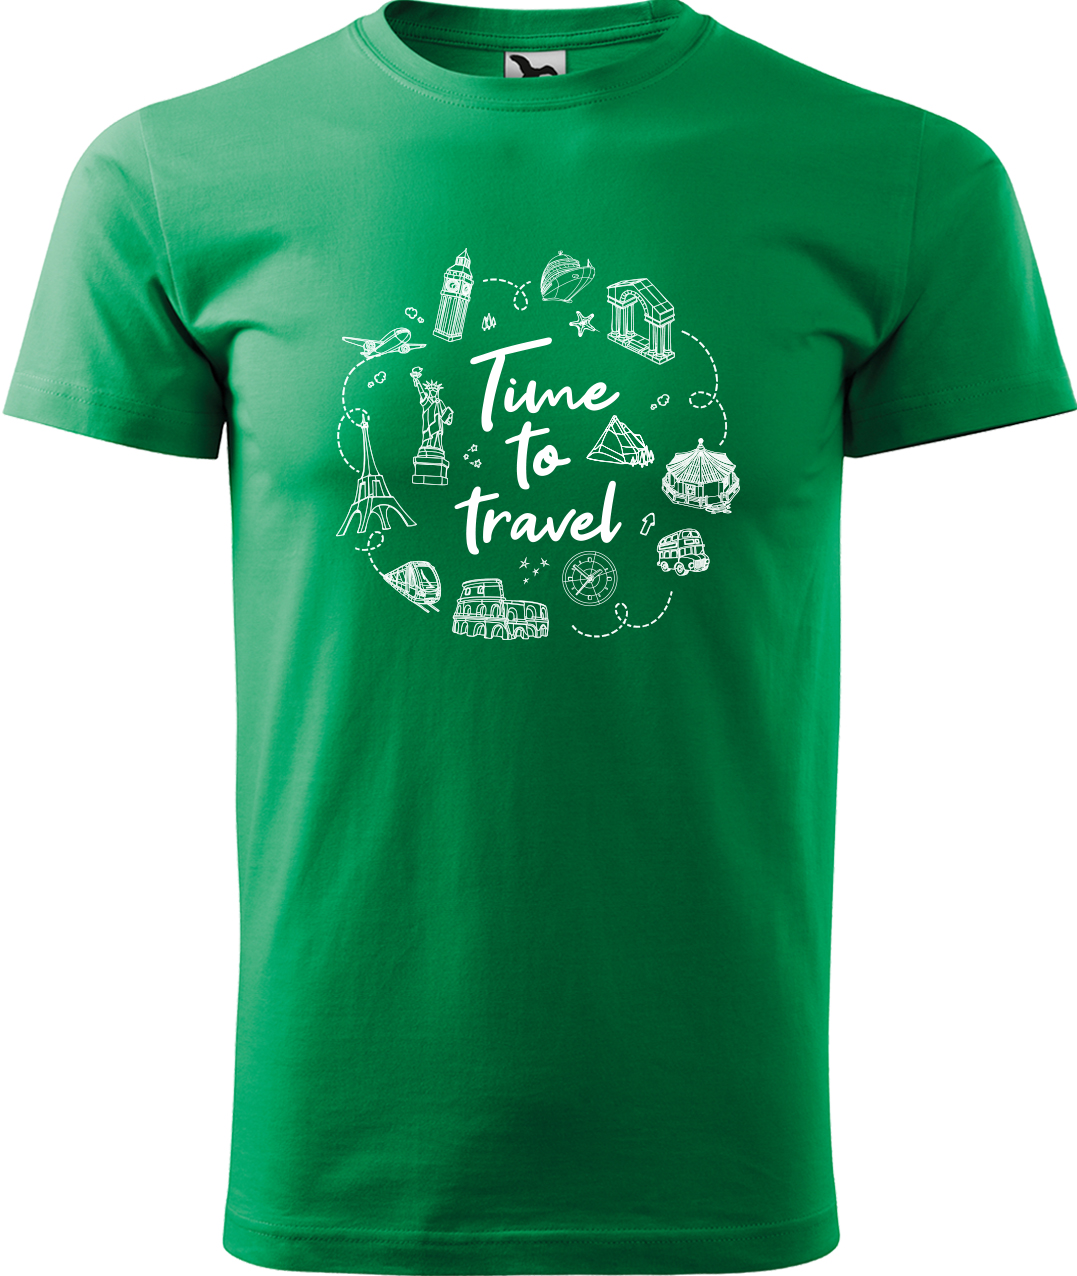 Pánské cestovatelské tričko - Time to travel Velikost: XL, Barva: Středně zelená (16), Střih: pánský